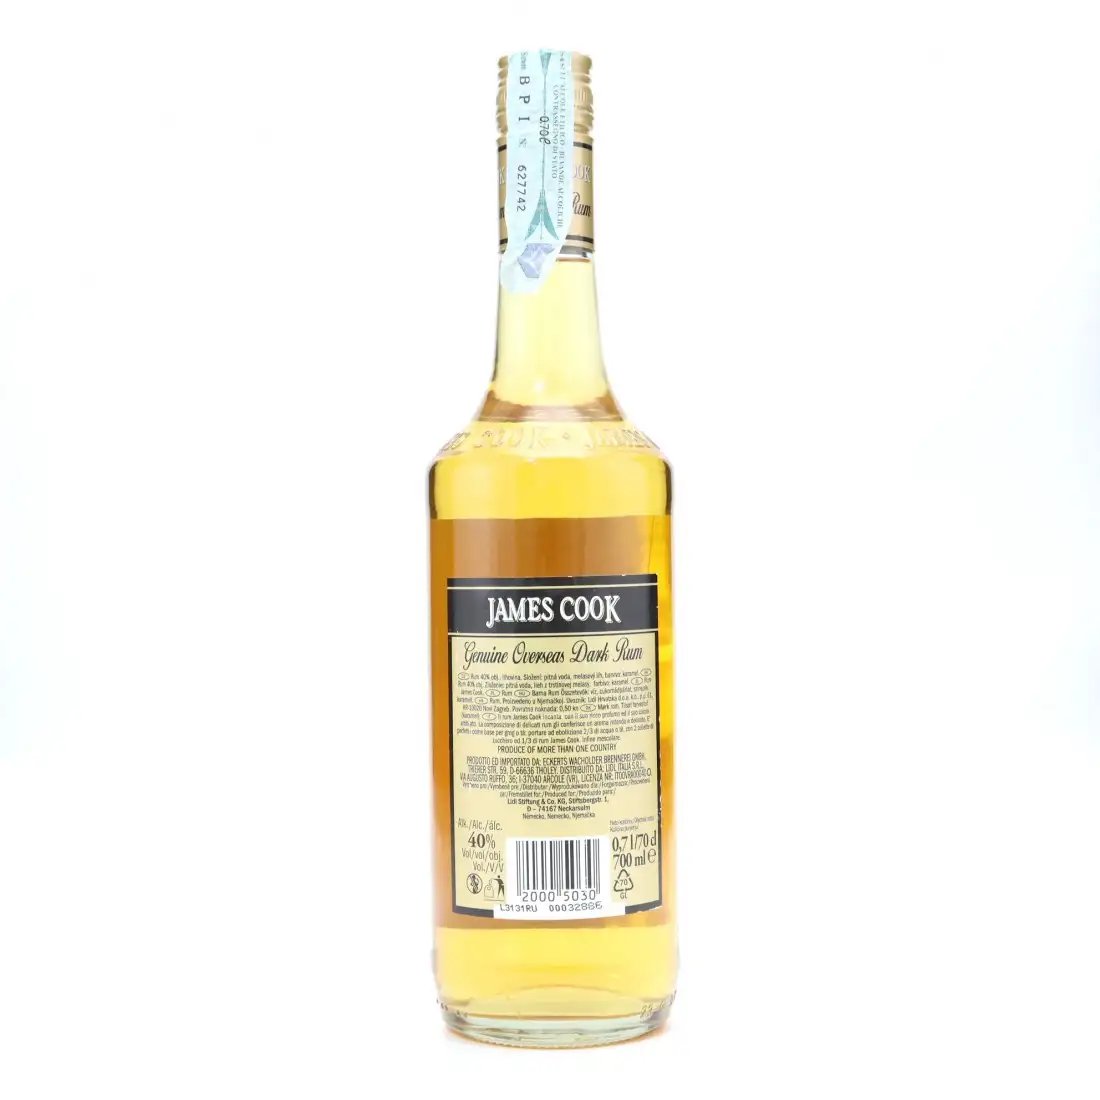 James Cook Genuine Overseas Dark RX10284 Rum RumX 40% | 